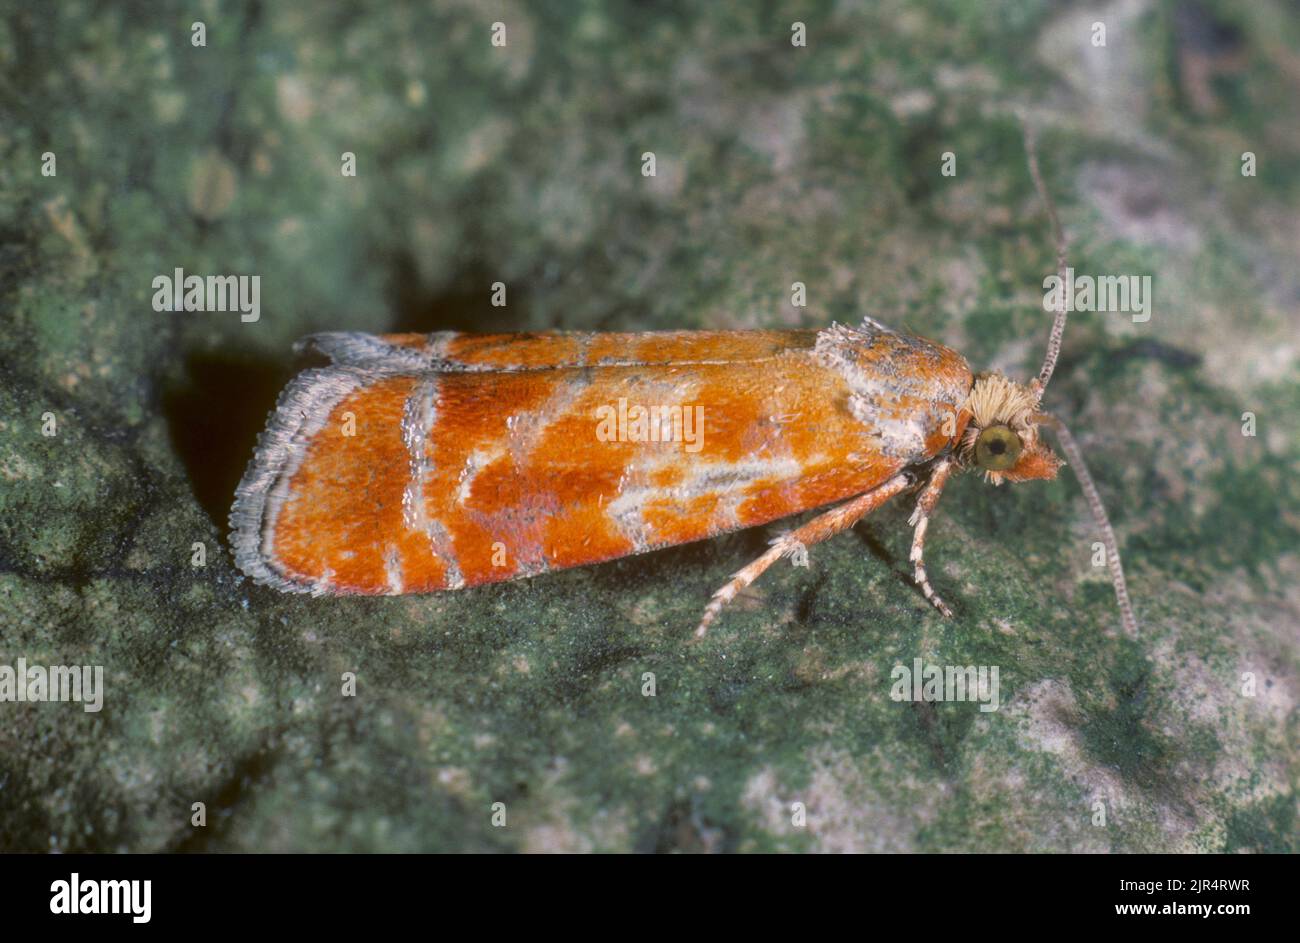 gemmed shoot moth, pine-sprout tortrix, European pine shoot moth (Evetria buoliana, Rhyacionia buoliana), sits on bark, Germany Stock Photo